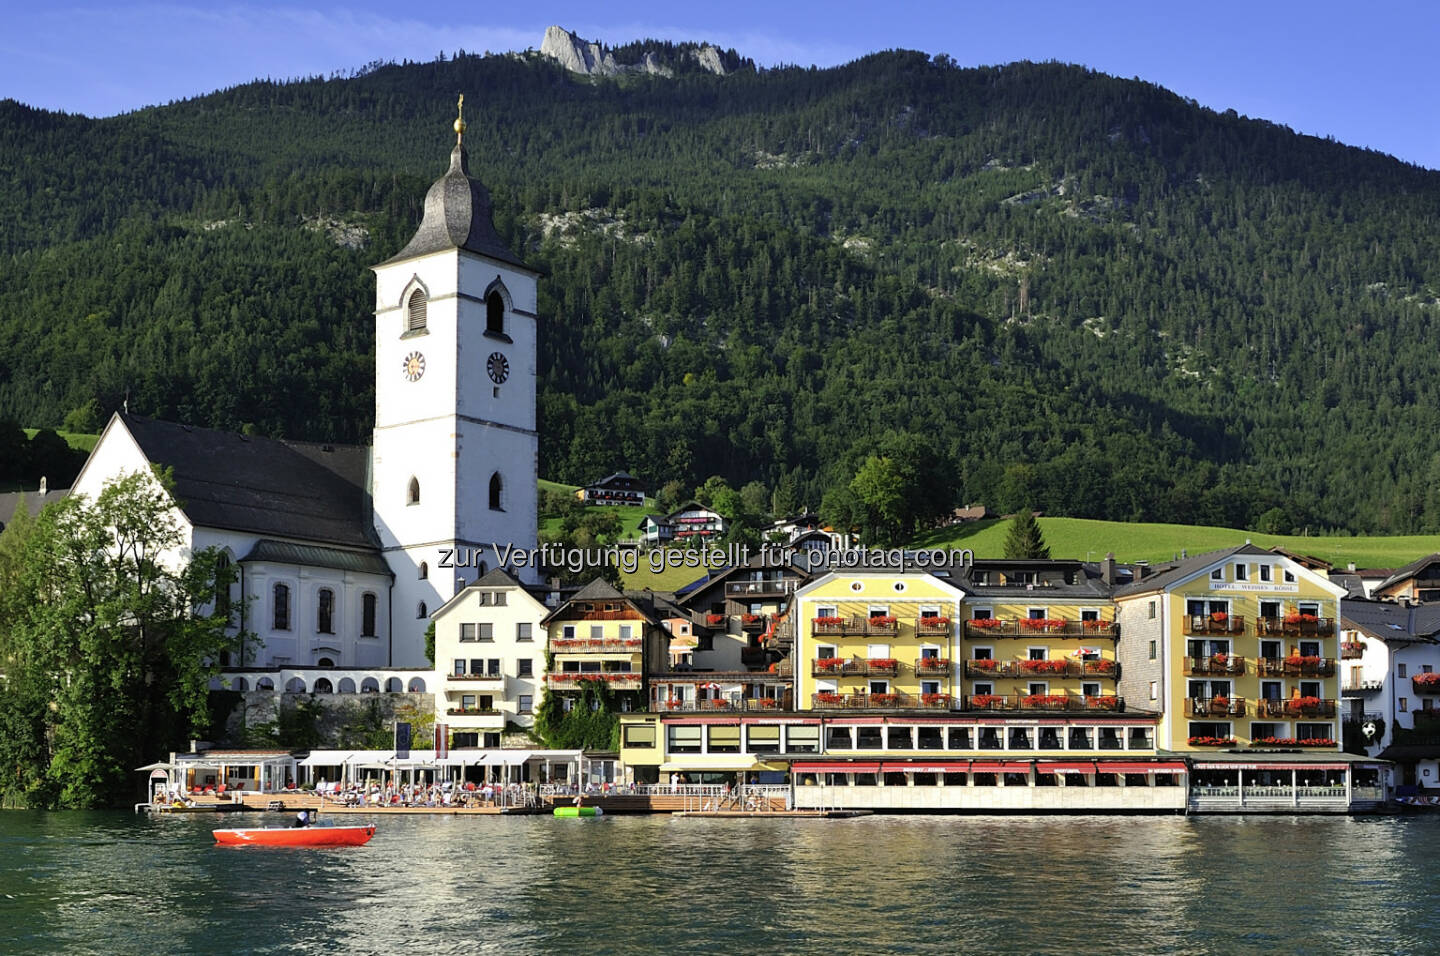 Prodinger|GFB Hotel Tourismus Consulting: Gault Millau: Zwei Hauben und viel Lob für Das Weisse Rössl am Wolfgangsee